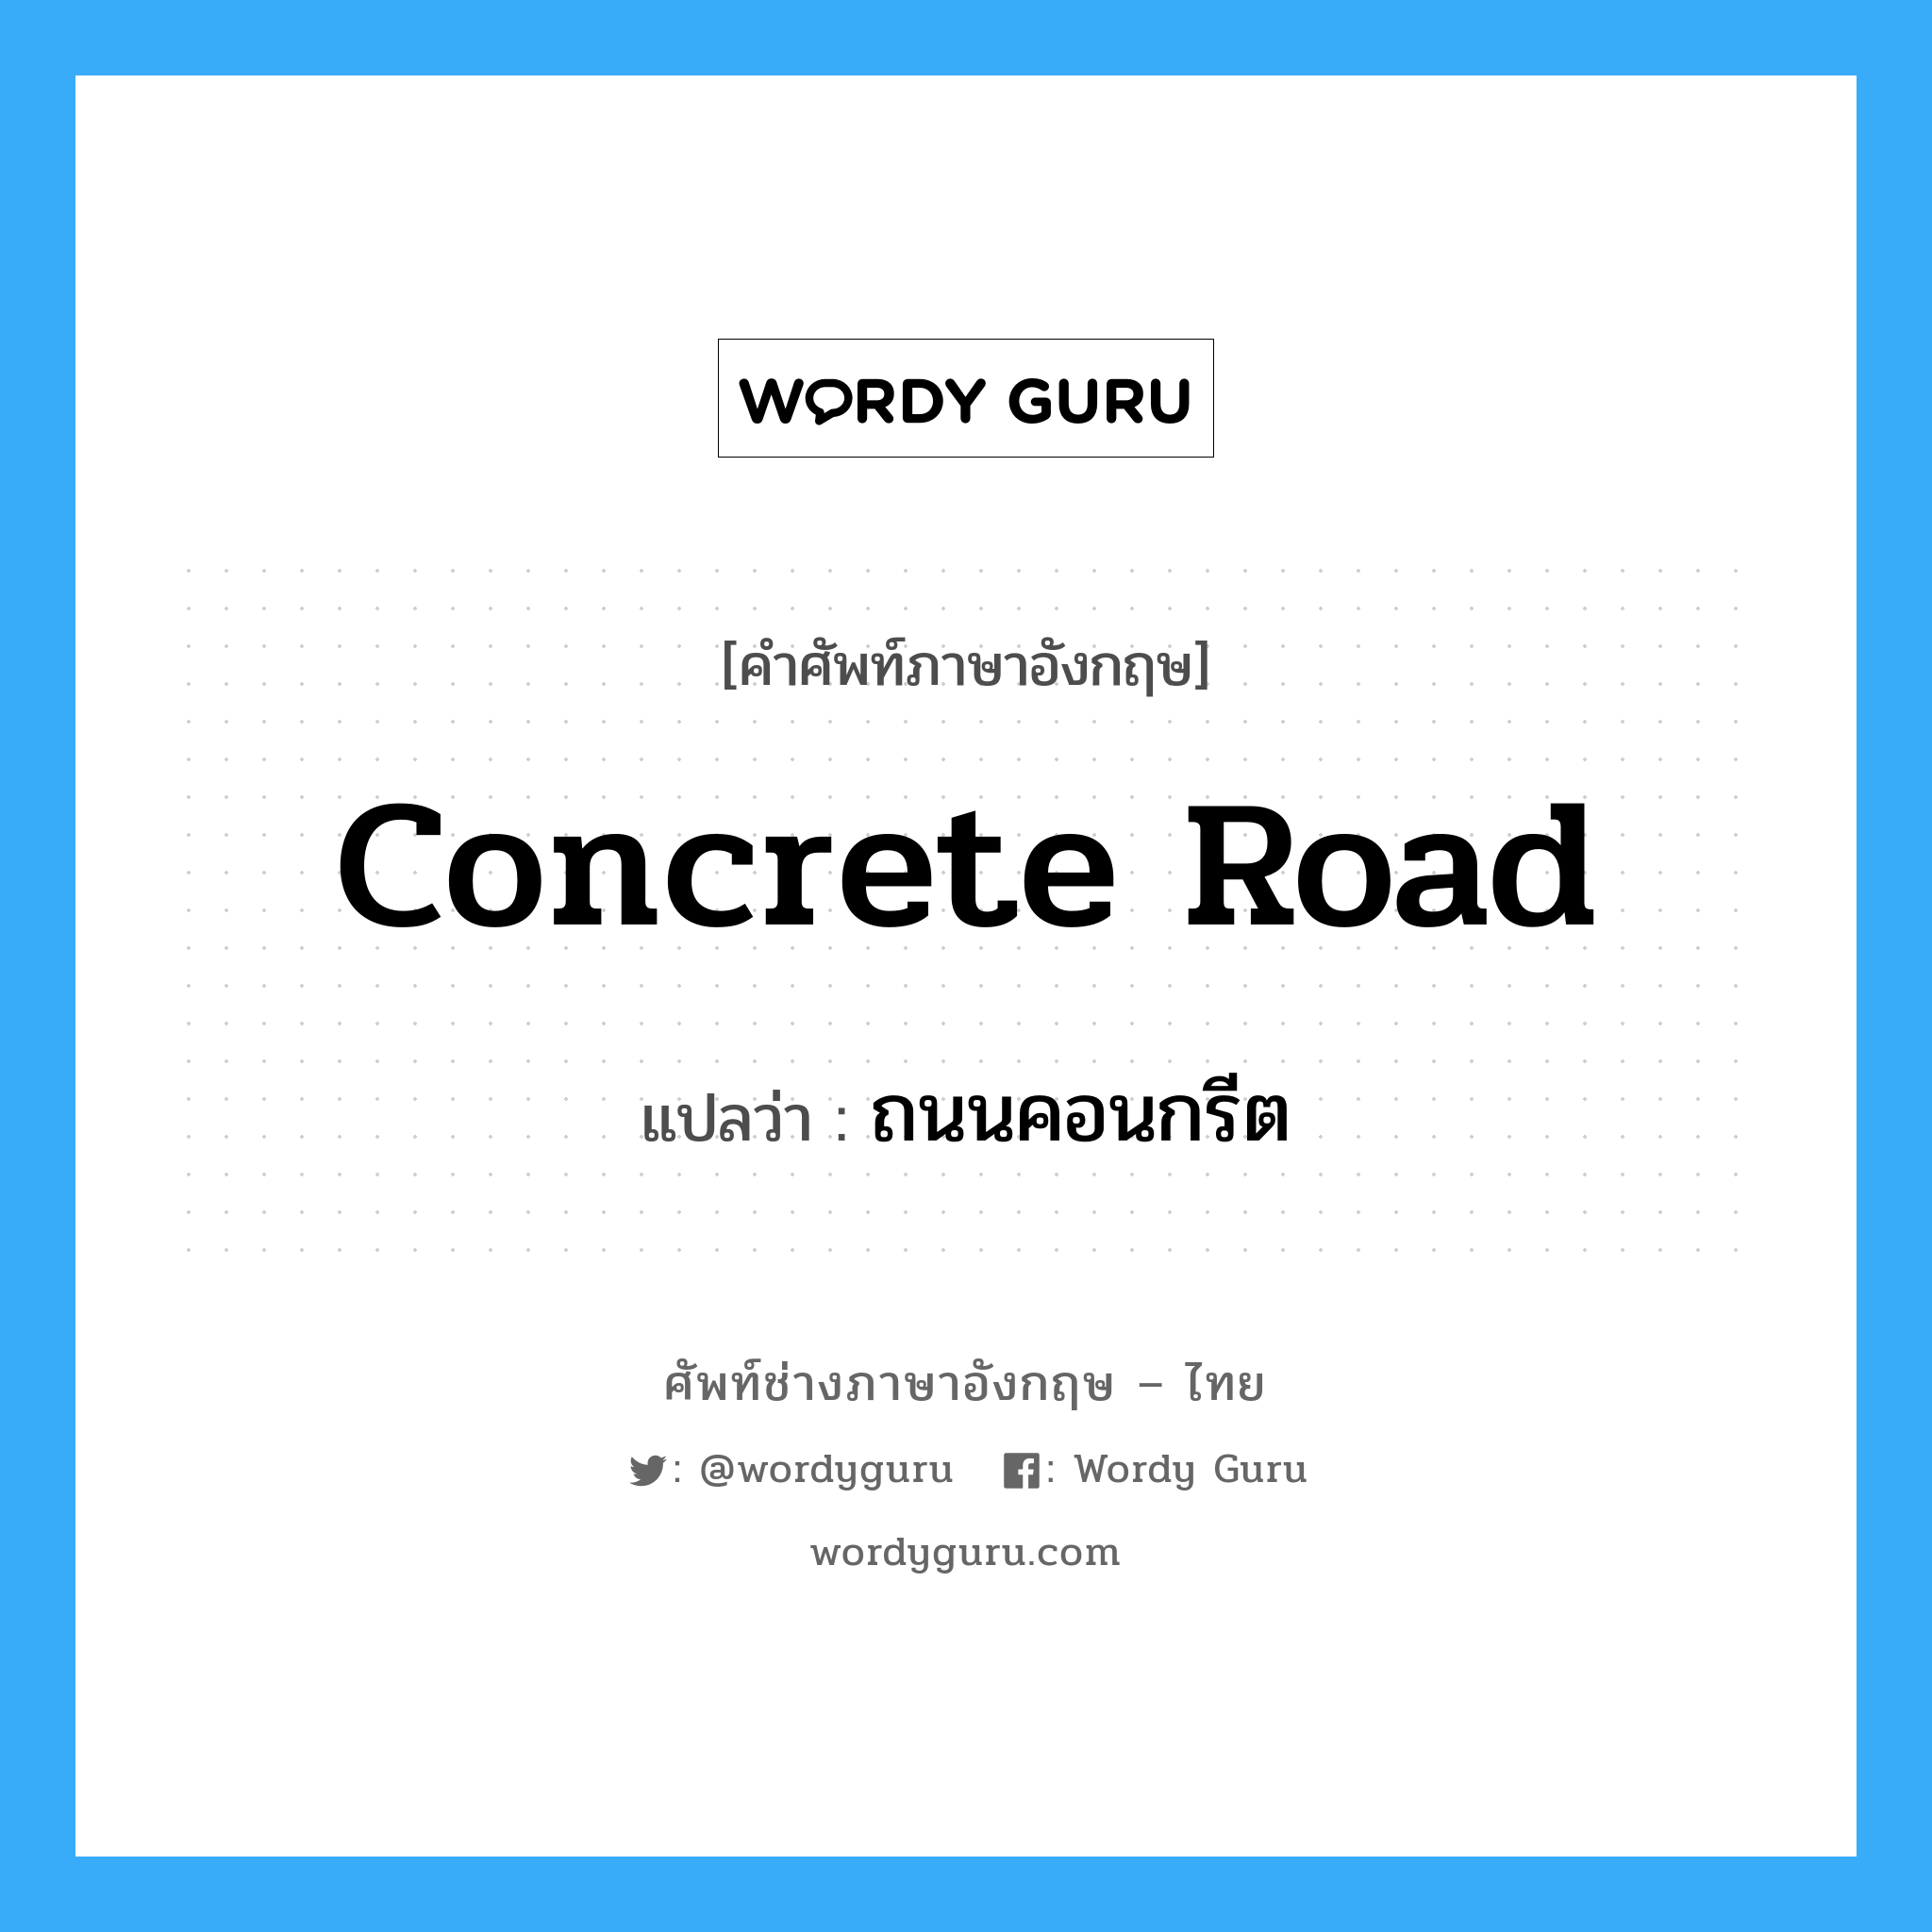 ถนนคอนกรีต ภาษาอังกฤษ?, คำศัพท์ช่างภาษาอังกฤษ - ไทย ถนนคอนกรีต คำศัพท์ภาษาอังกฤษ ถนนคอนกรีต แปลว่า concrete road